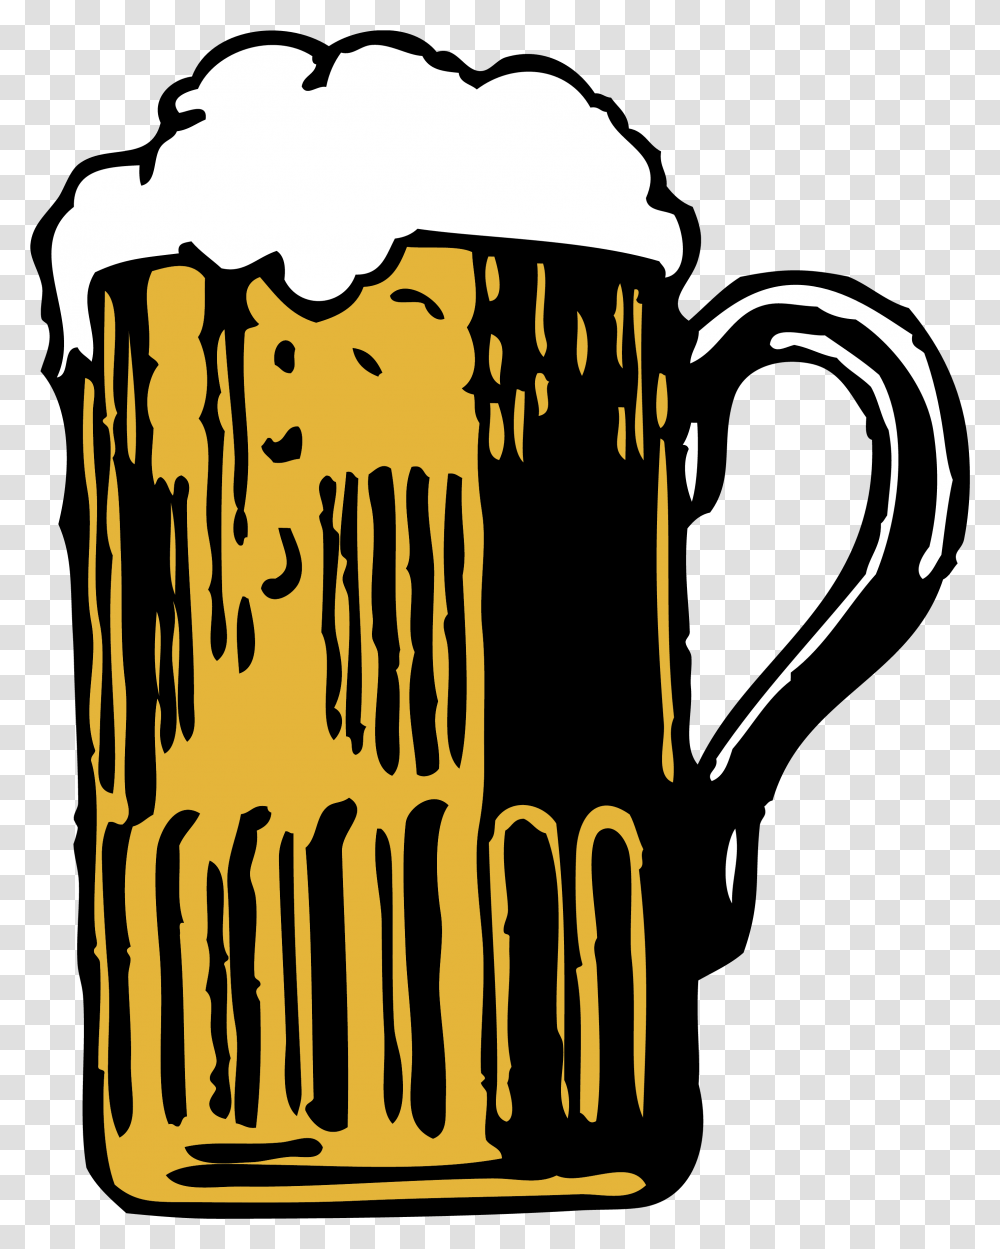 Beer Mug Download Chopp Mug Vector, Glass, Beer Glass, Alcohol, Beverage Transparent Png